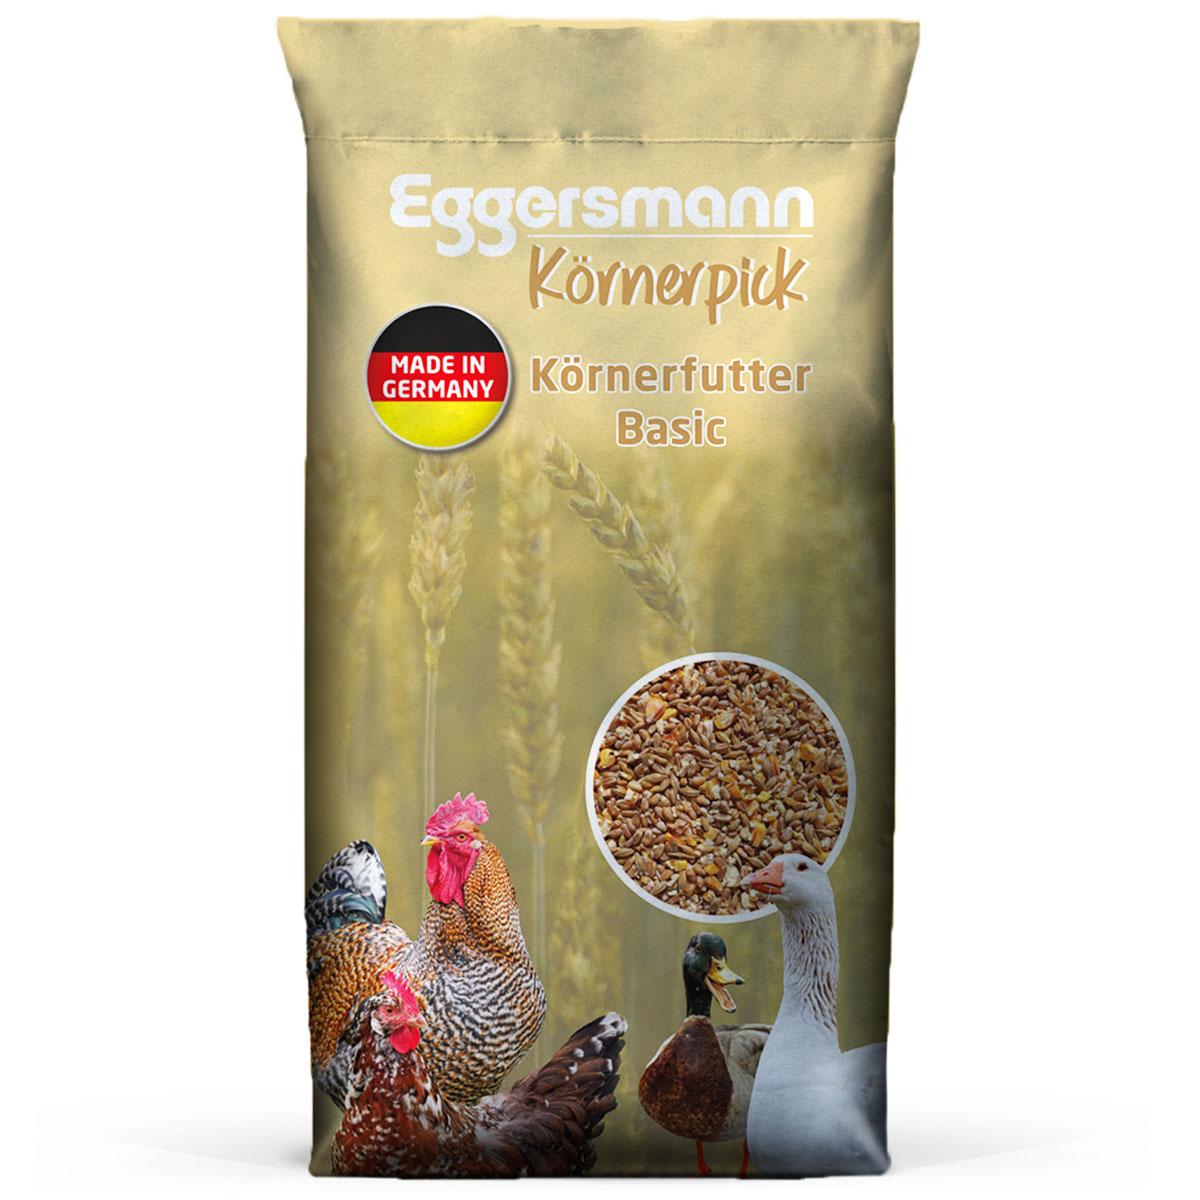 Eggersmann Körnerpick - Körnerfutter Basic 25 kg